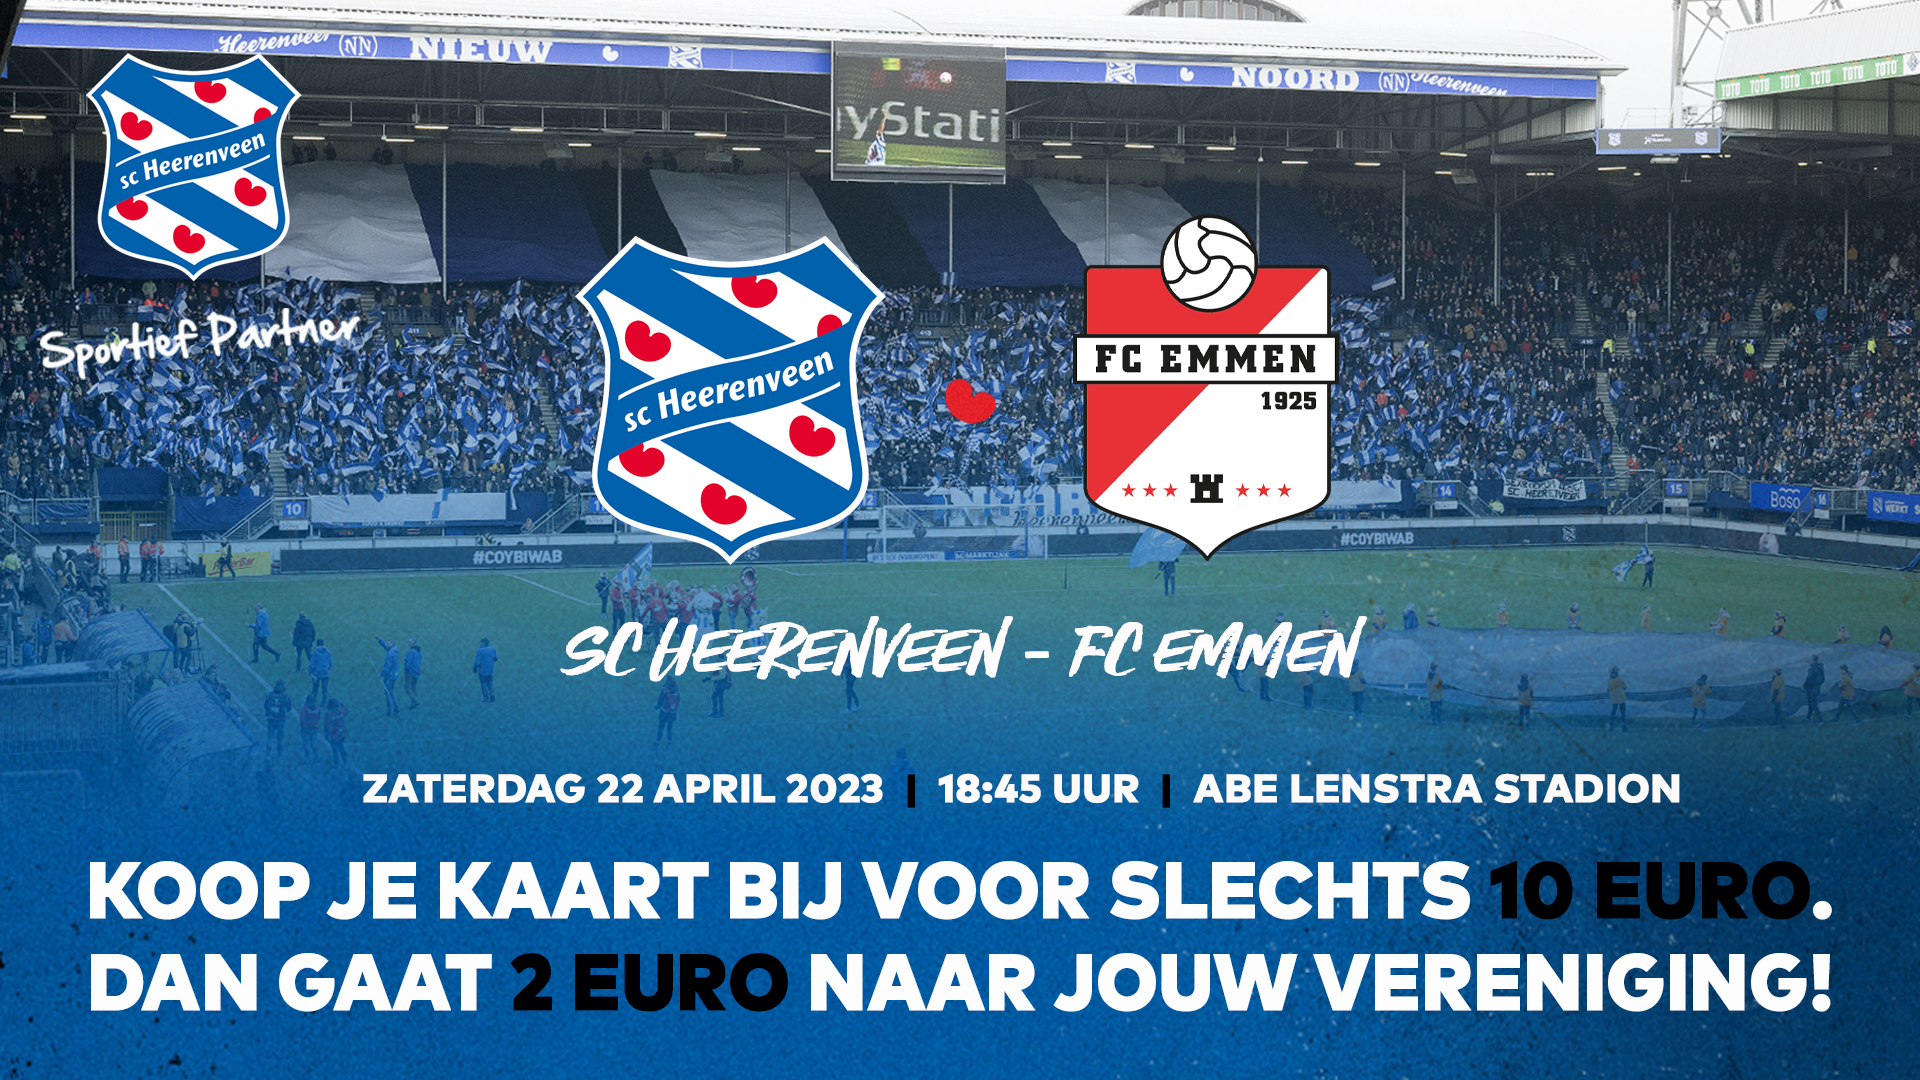 Kaartverkoopactie SC Heerenveen – FC Emmen, 22 april om 18:45 uur